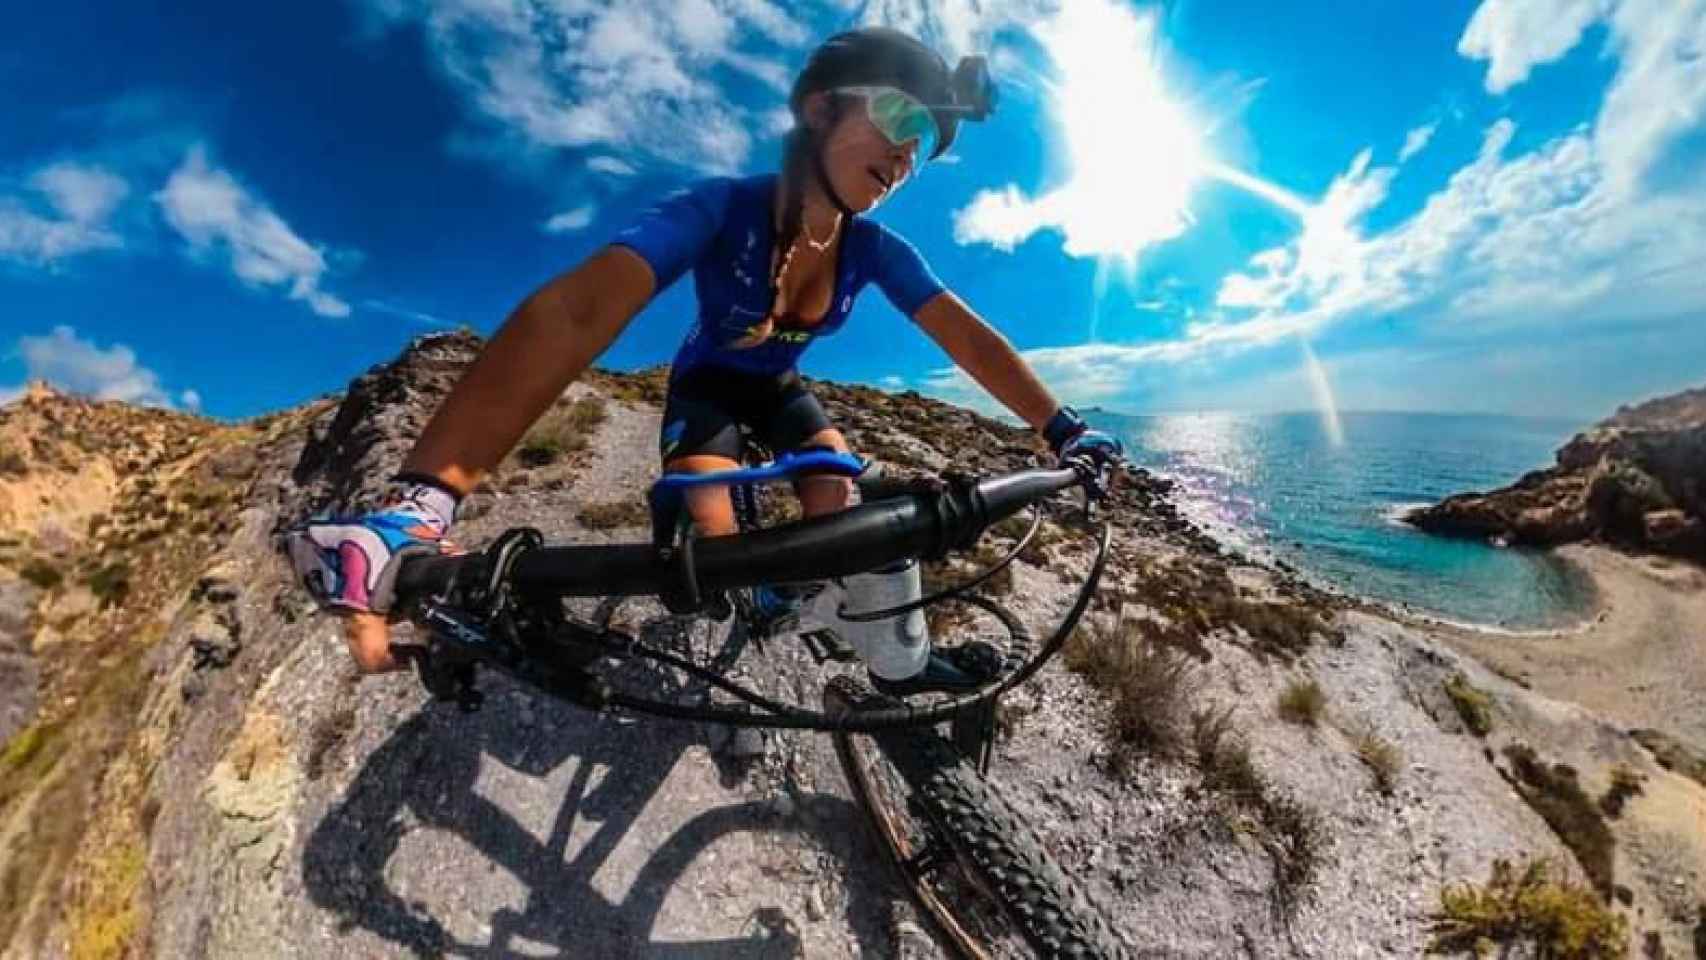 Cecilia Sopeña haciendo un vídeo 360 en una de las rutas en bicicleta que muestra en su canal de Youtube.